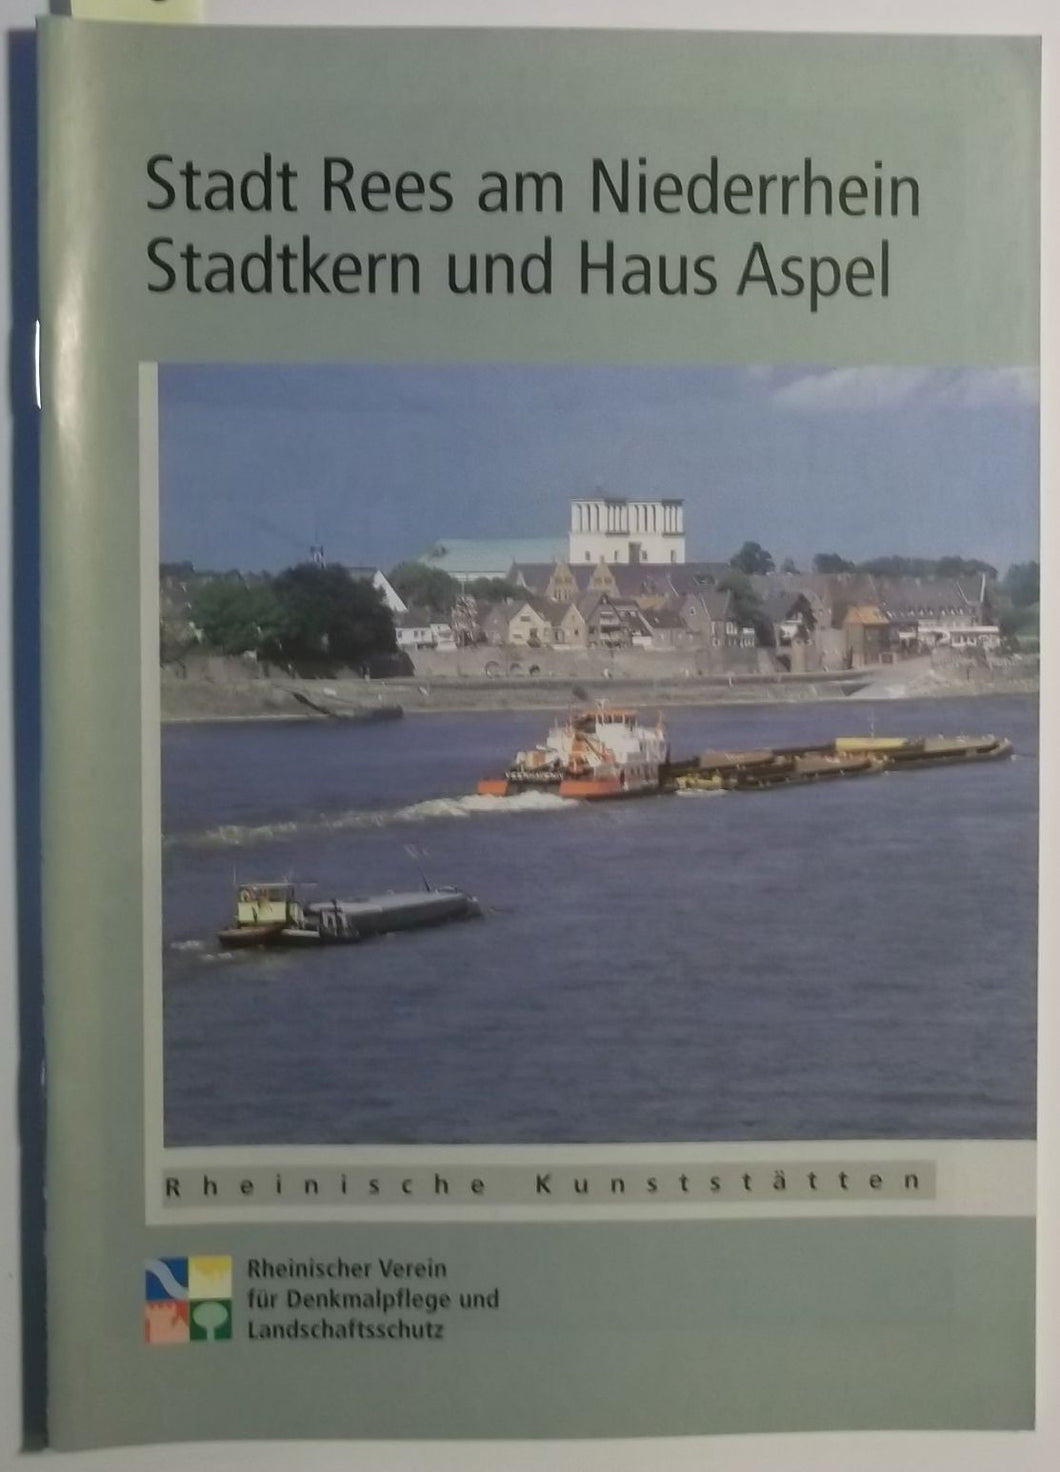 Rheinische Kunststätten Heft 442 - Stadt Rees am Niederrhein: Stadtkern und Haus Aspel (1999)